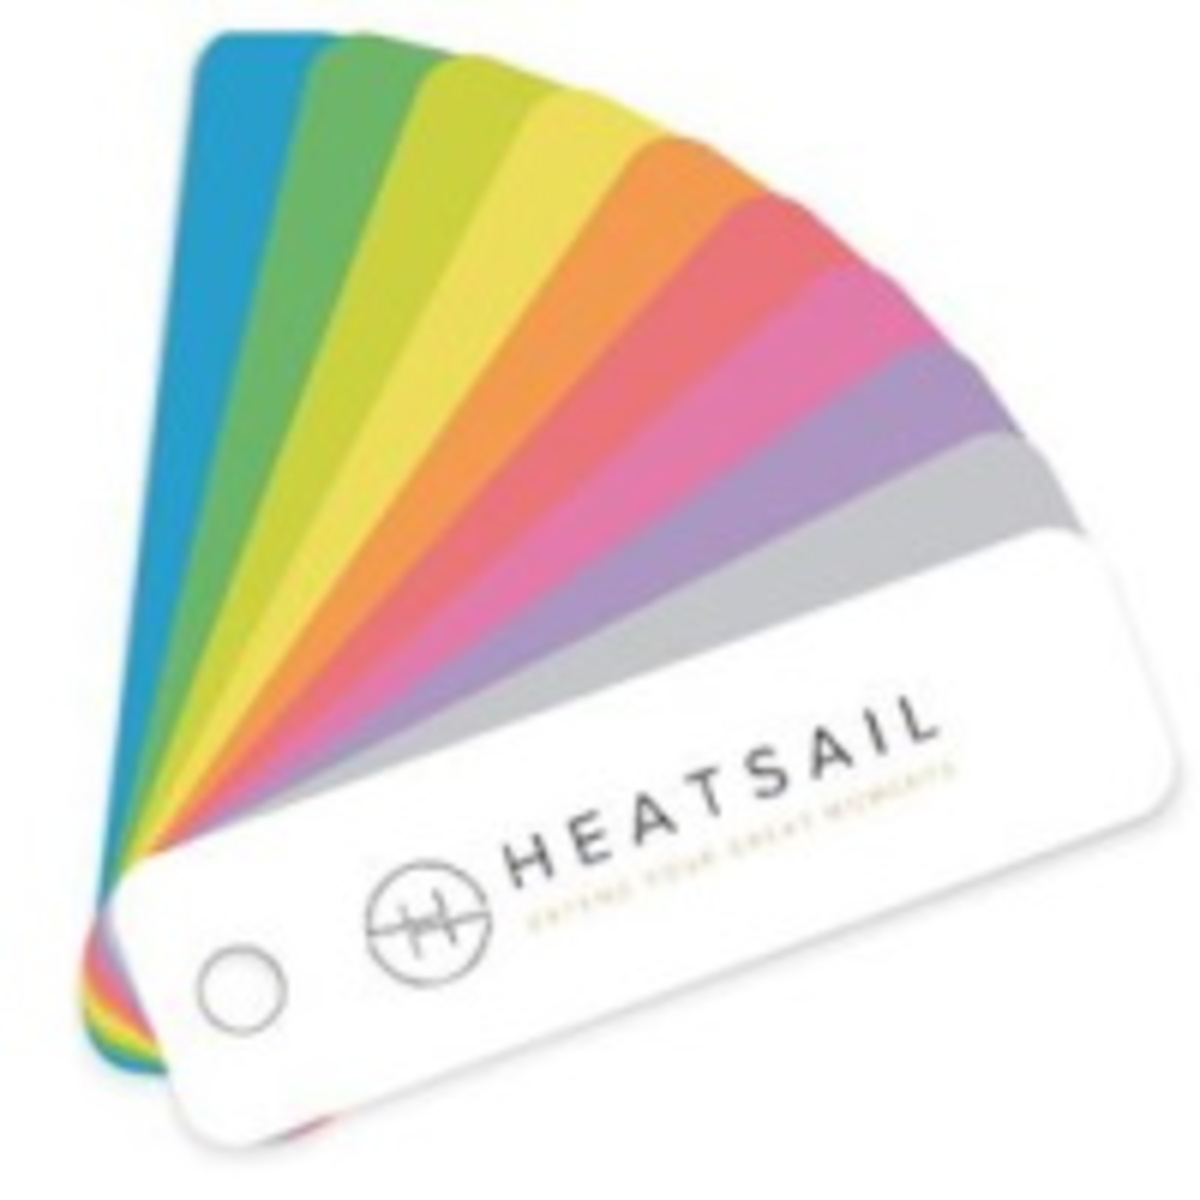 Opción de Heatsail Dome en cualquier color RAL posible